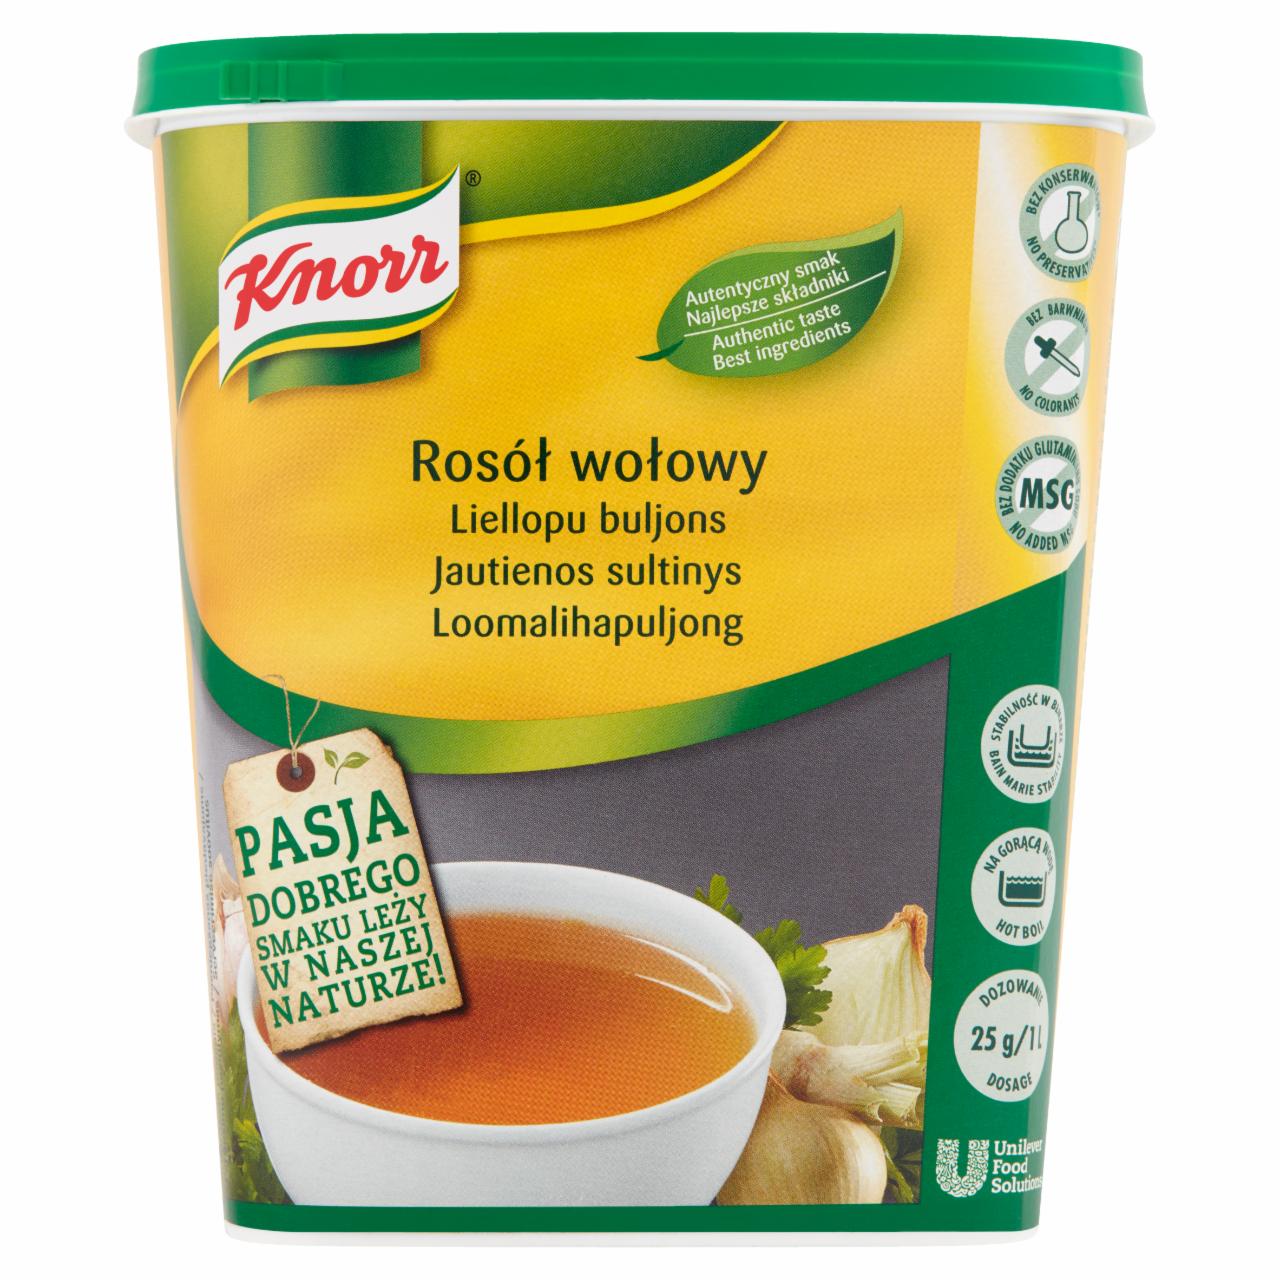 Zdjęcia - Knorr Rosół wołowy 0,9 kg